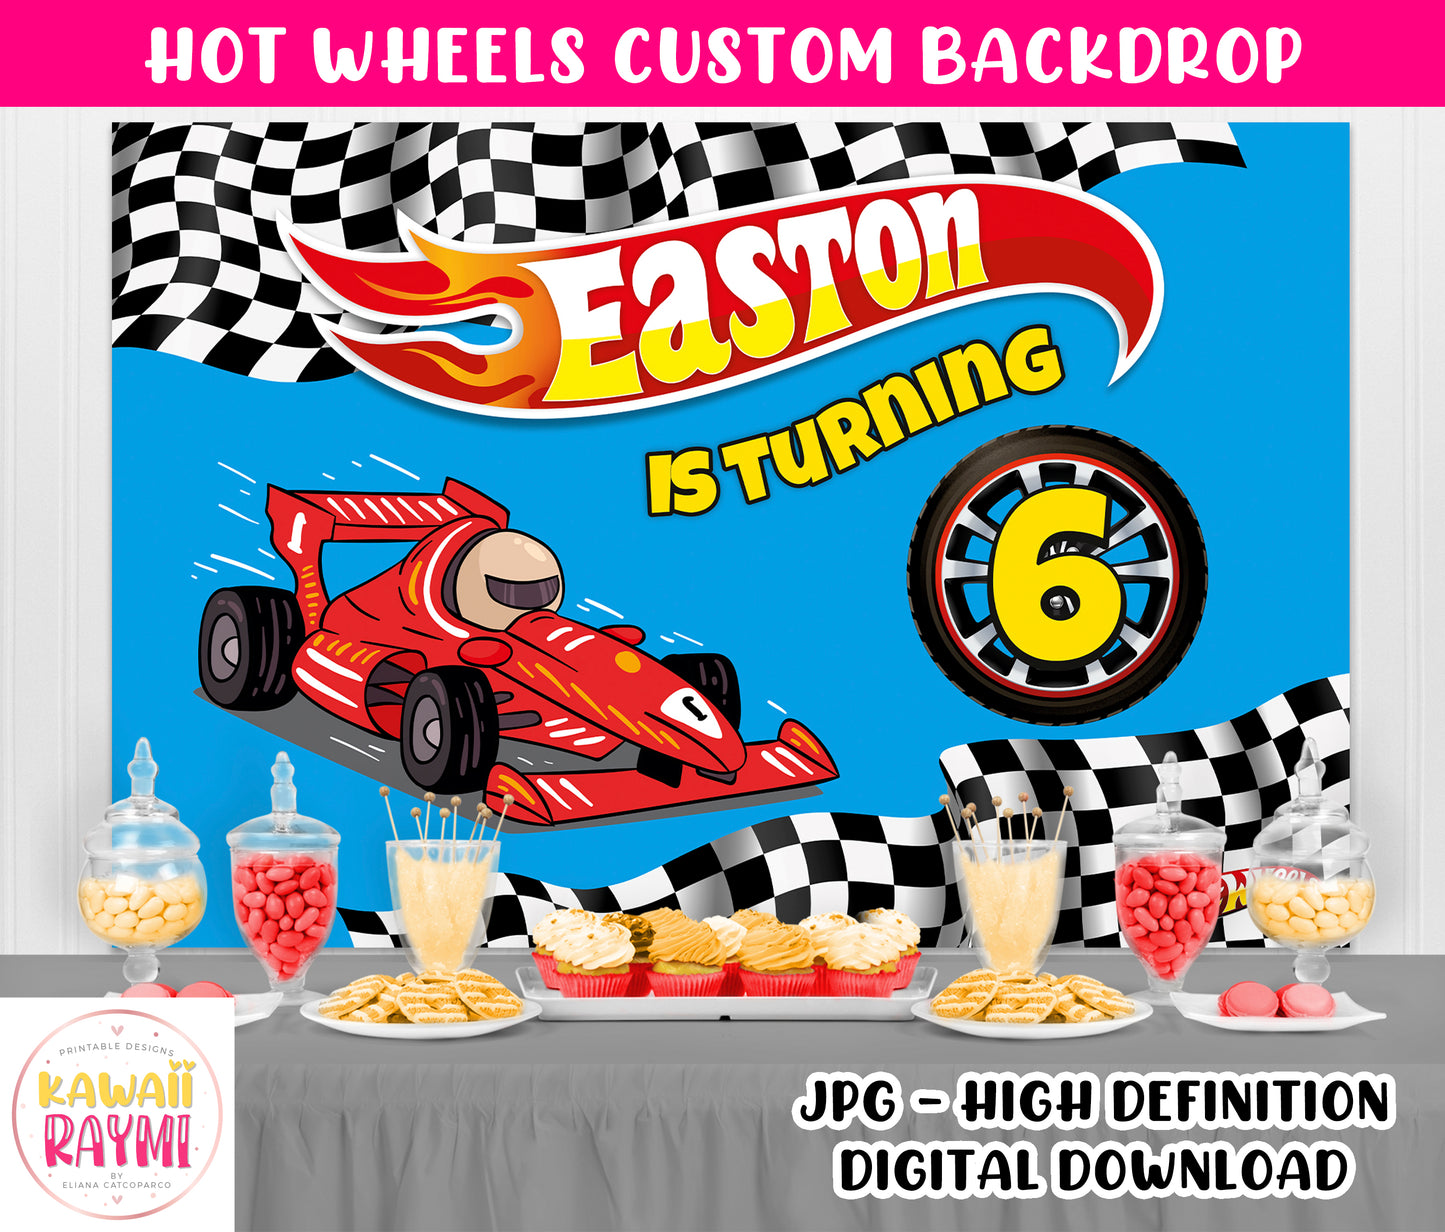 Hot wheels custom backdrop, digital file, hot wheels backdrop digital download, birthday party racing car